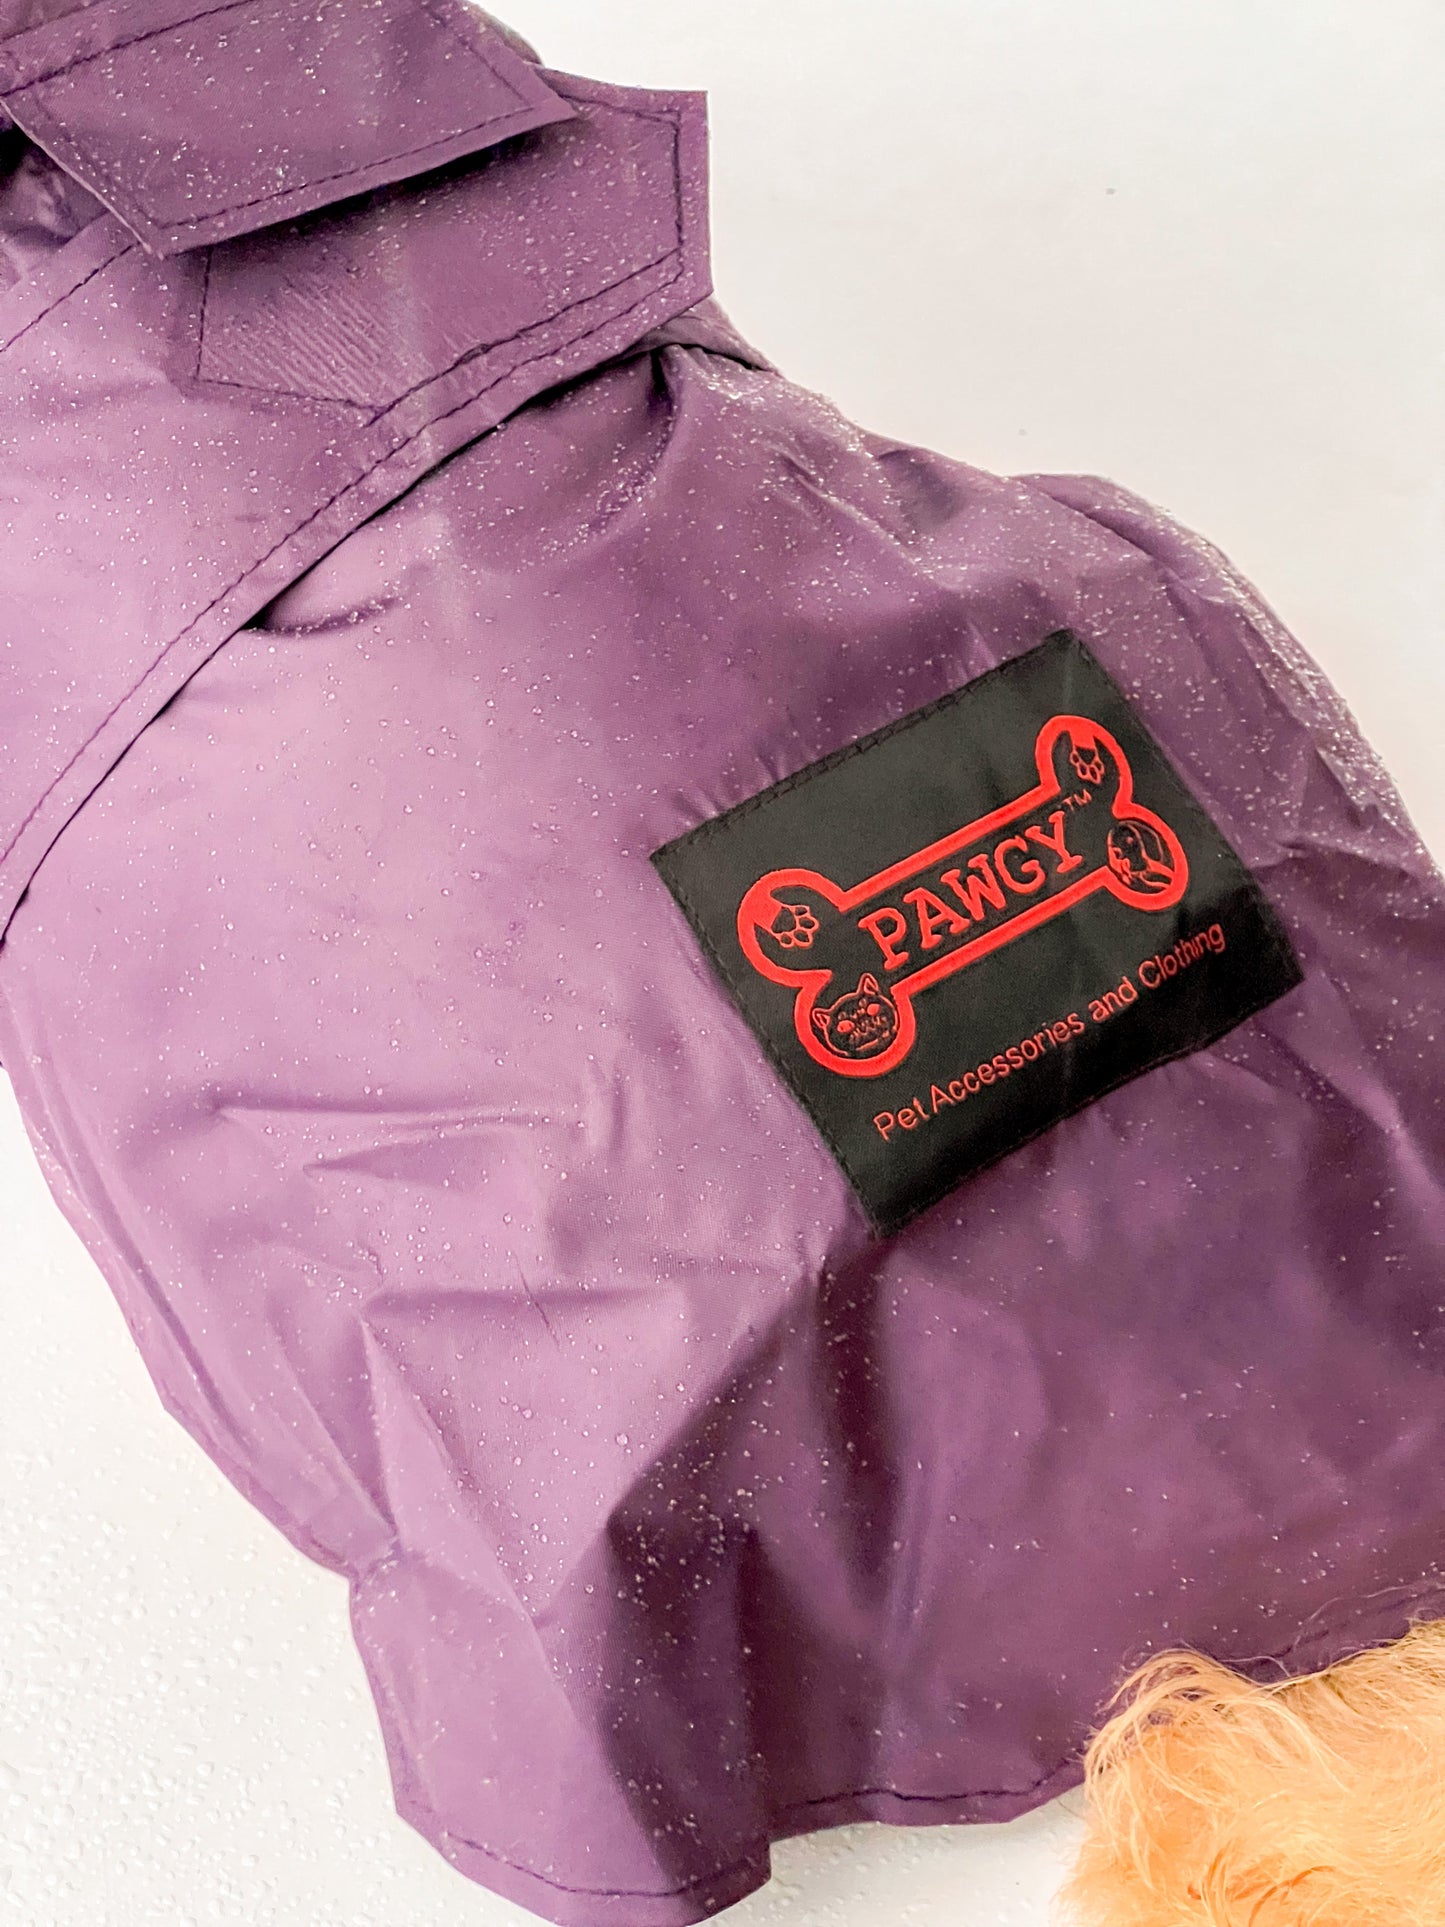 Raincoat: Purple